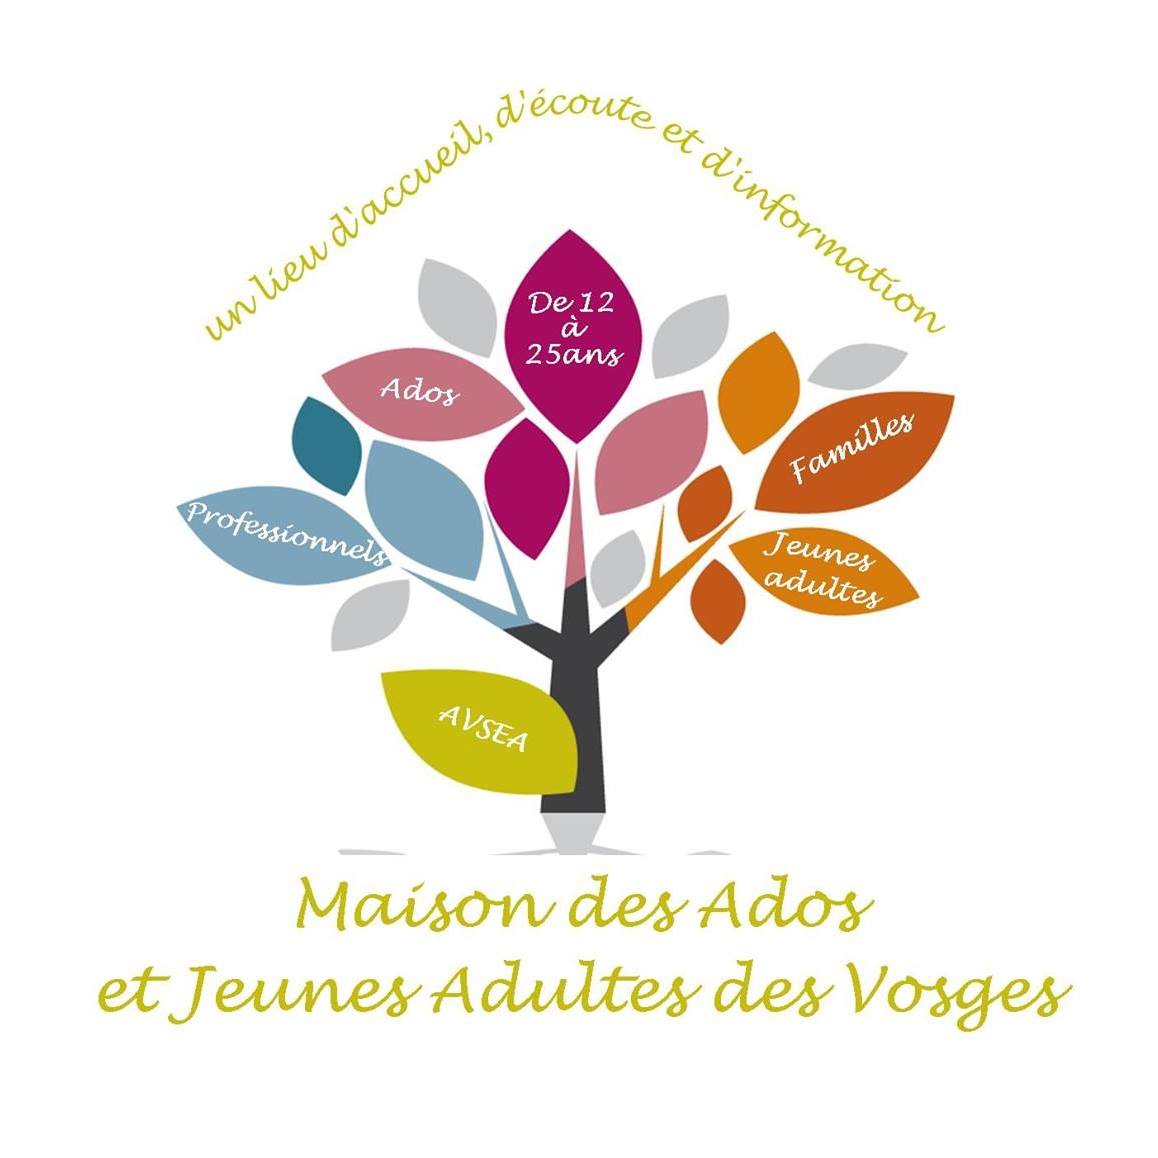 MDAJA Epinal - Maison Des Adolescents et des Jeunes Adultes des Vosges